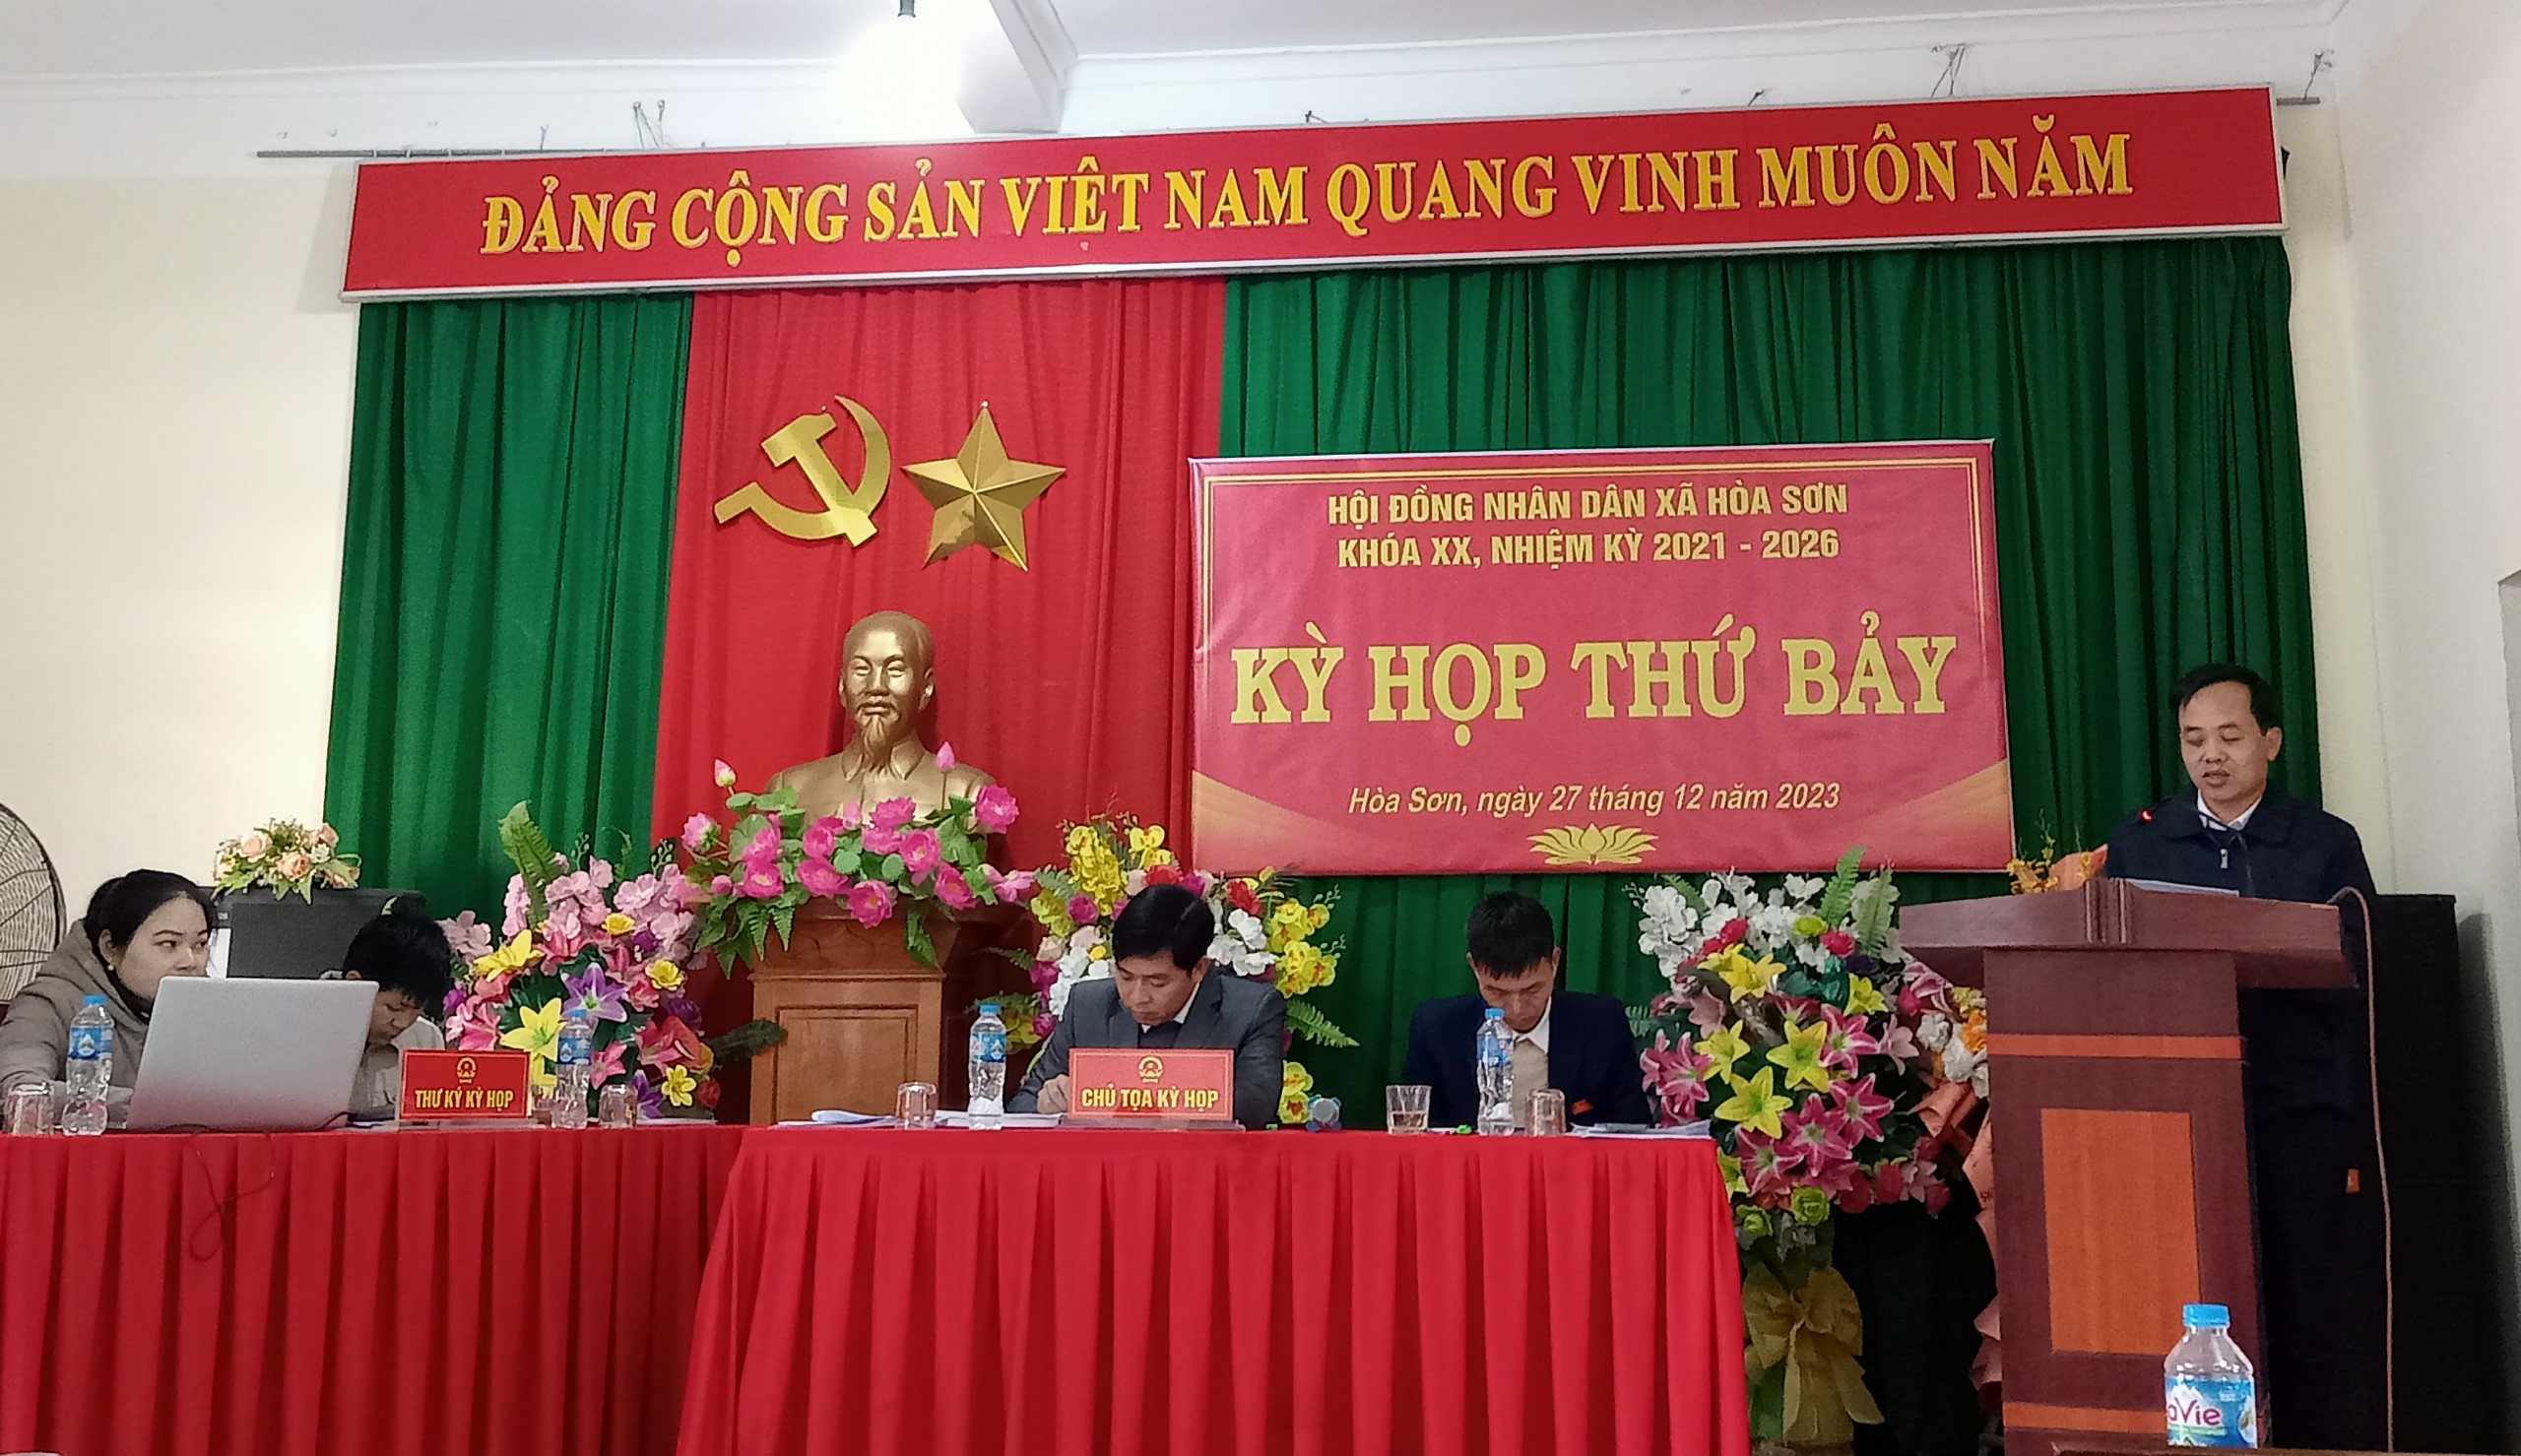 Đồng chí Bùi Quốc Khánh, Phó bí thư huyện ủy, Chủ tịch UBND huyện phát biểu chỉ đạo